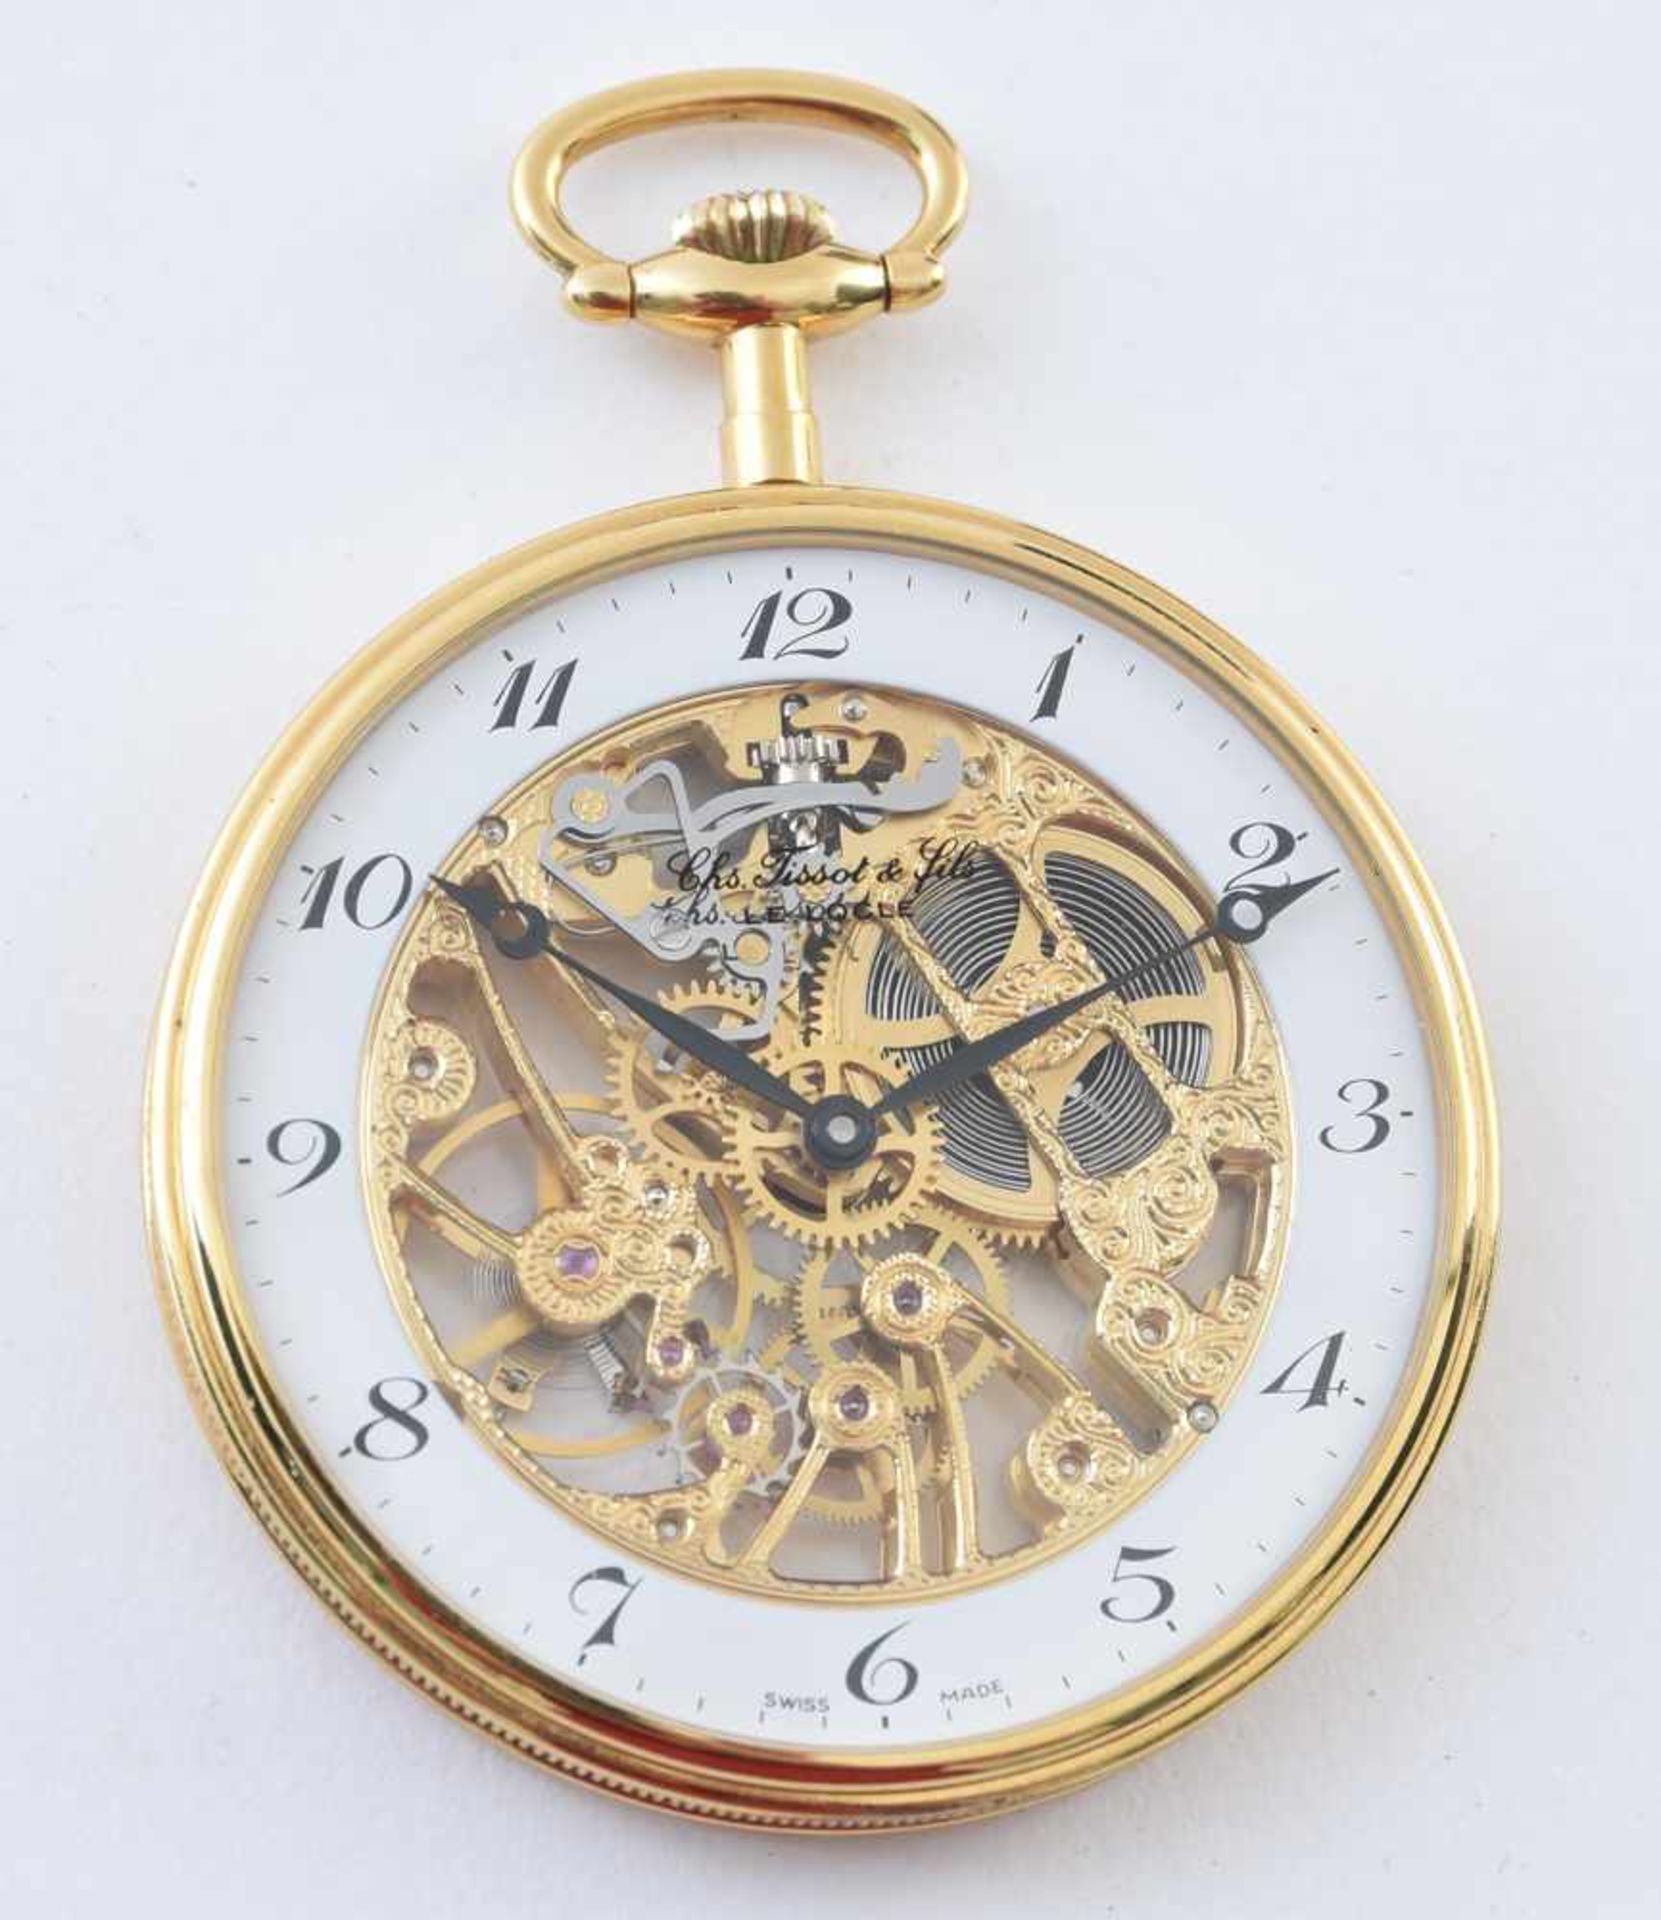 TASCHENUHR, Tissot, vergoldet, 20. JahrhundertSkelett-Taschenuhr. TISSOT & fils, Glas signiert, - Bild 4 aus 6